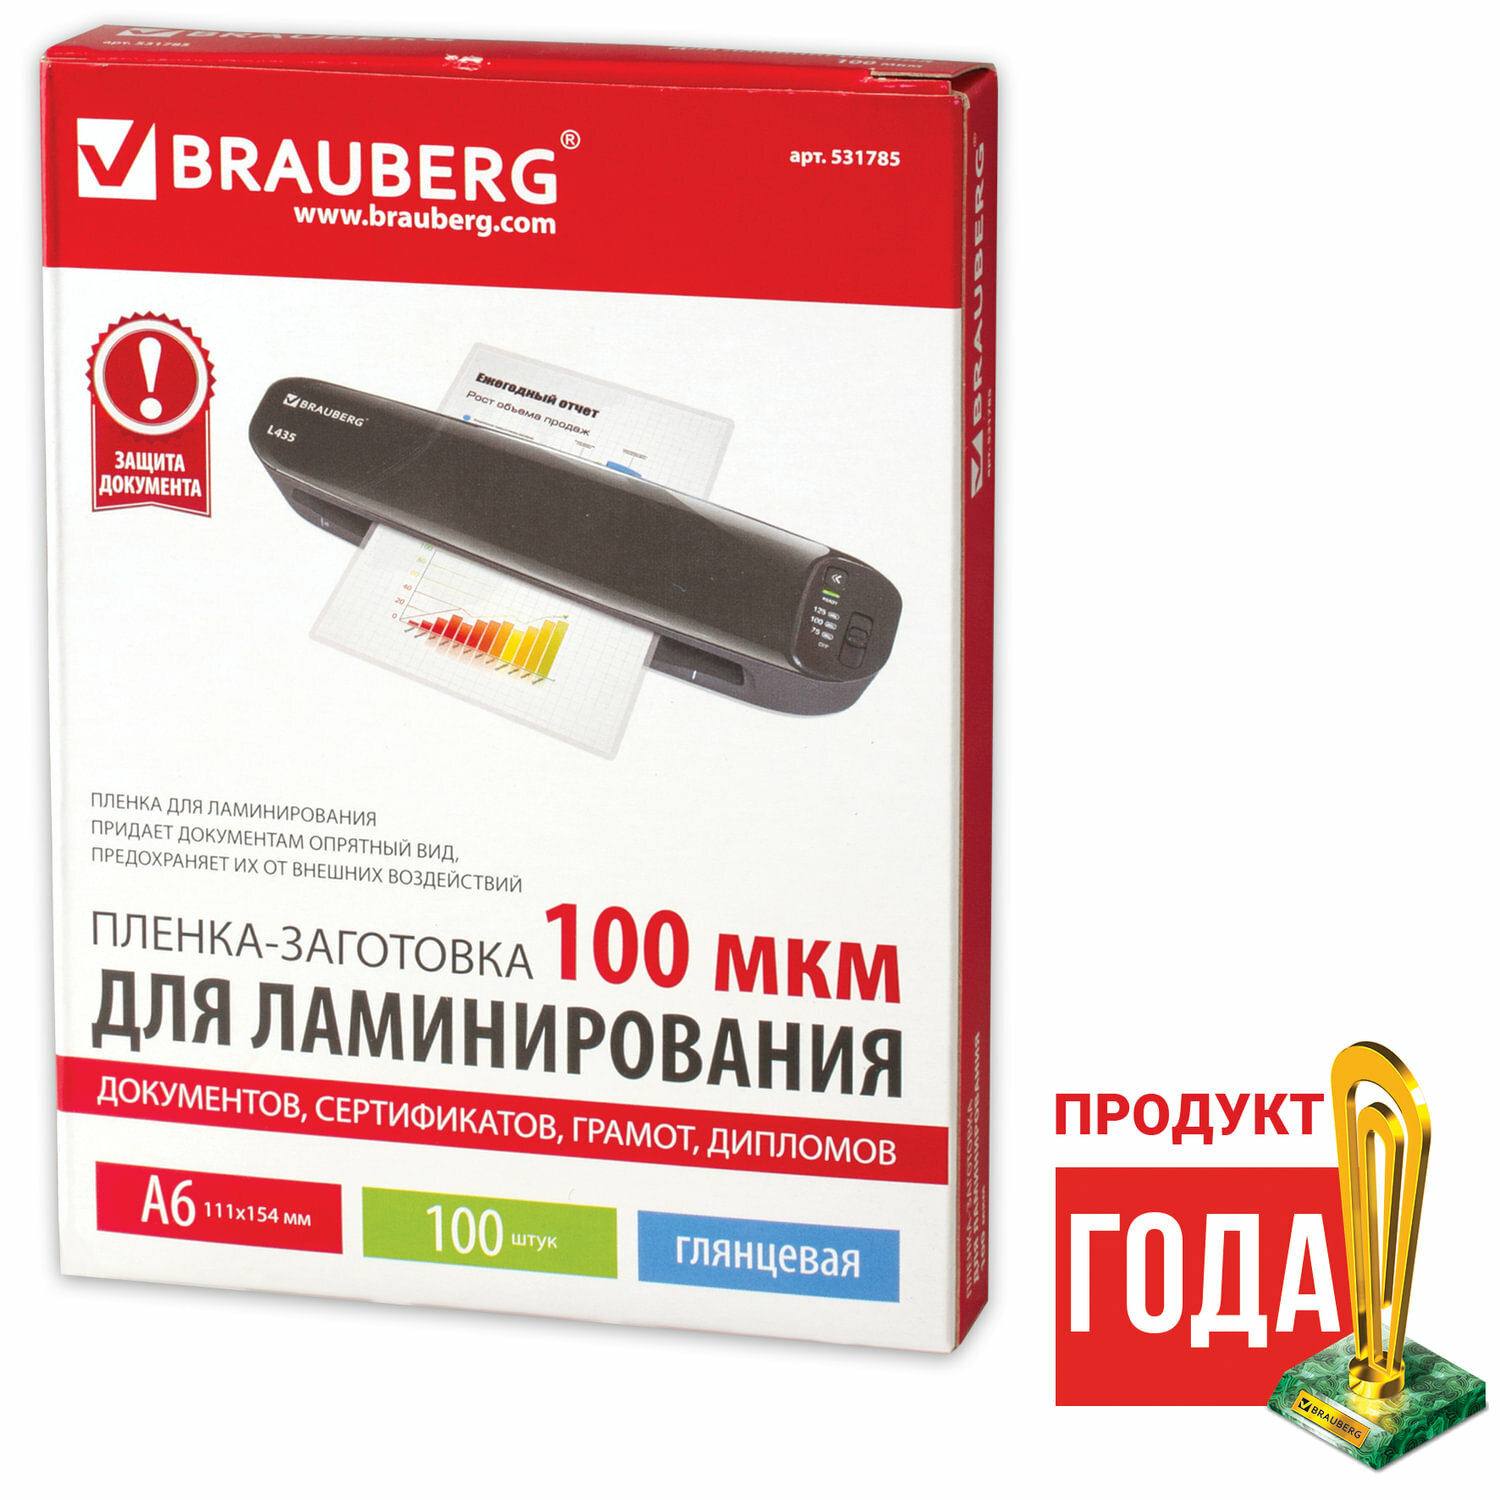 Пленки-заготовки для ламинирования Brauberg малого формата А6 комплект 100 шт 100 мкм (531785)